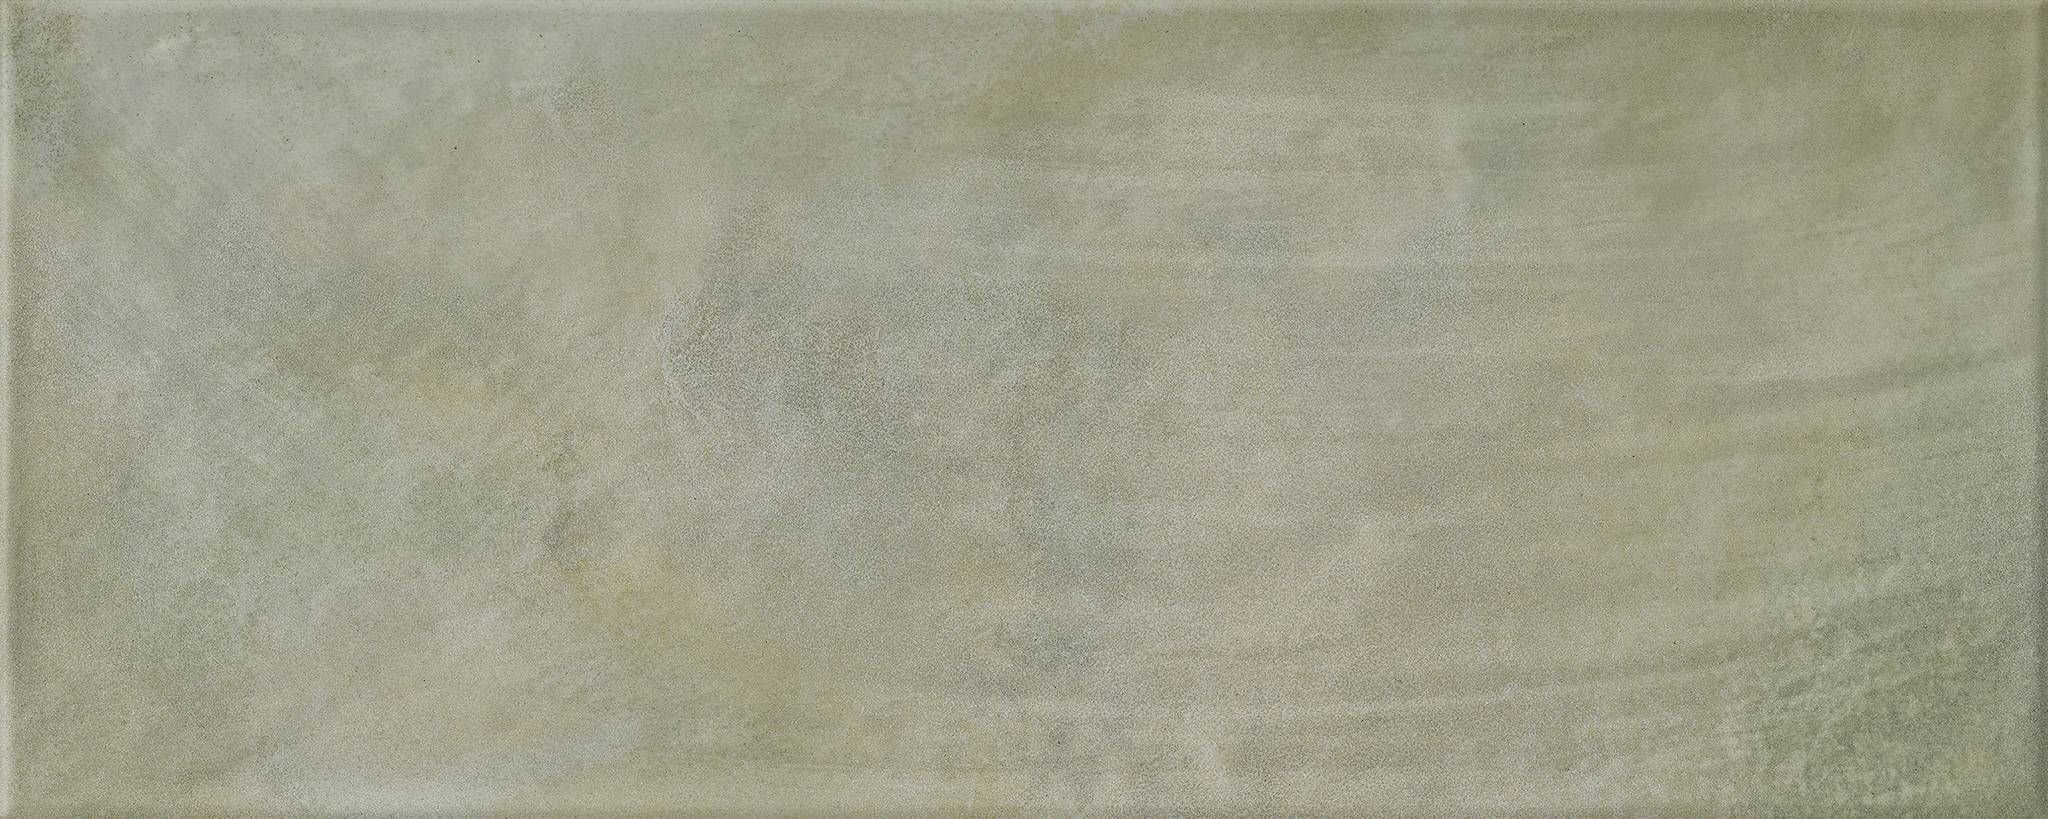 Керамическая плитка Keros Mayolica Musgo, цвет серый тёмный, поверхность глянцевая, прямоугольник, 200x500